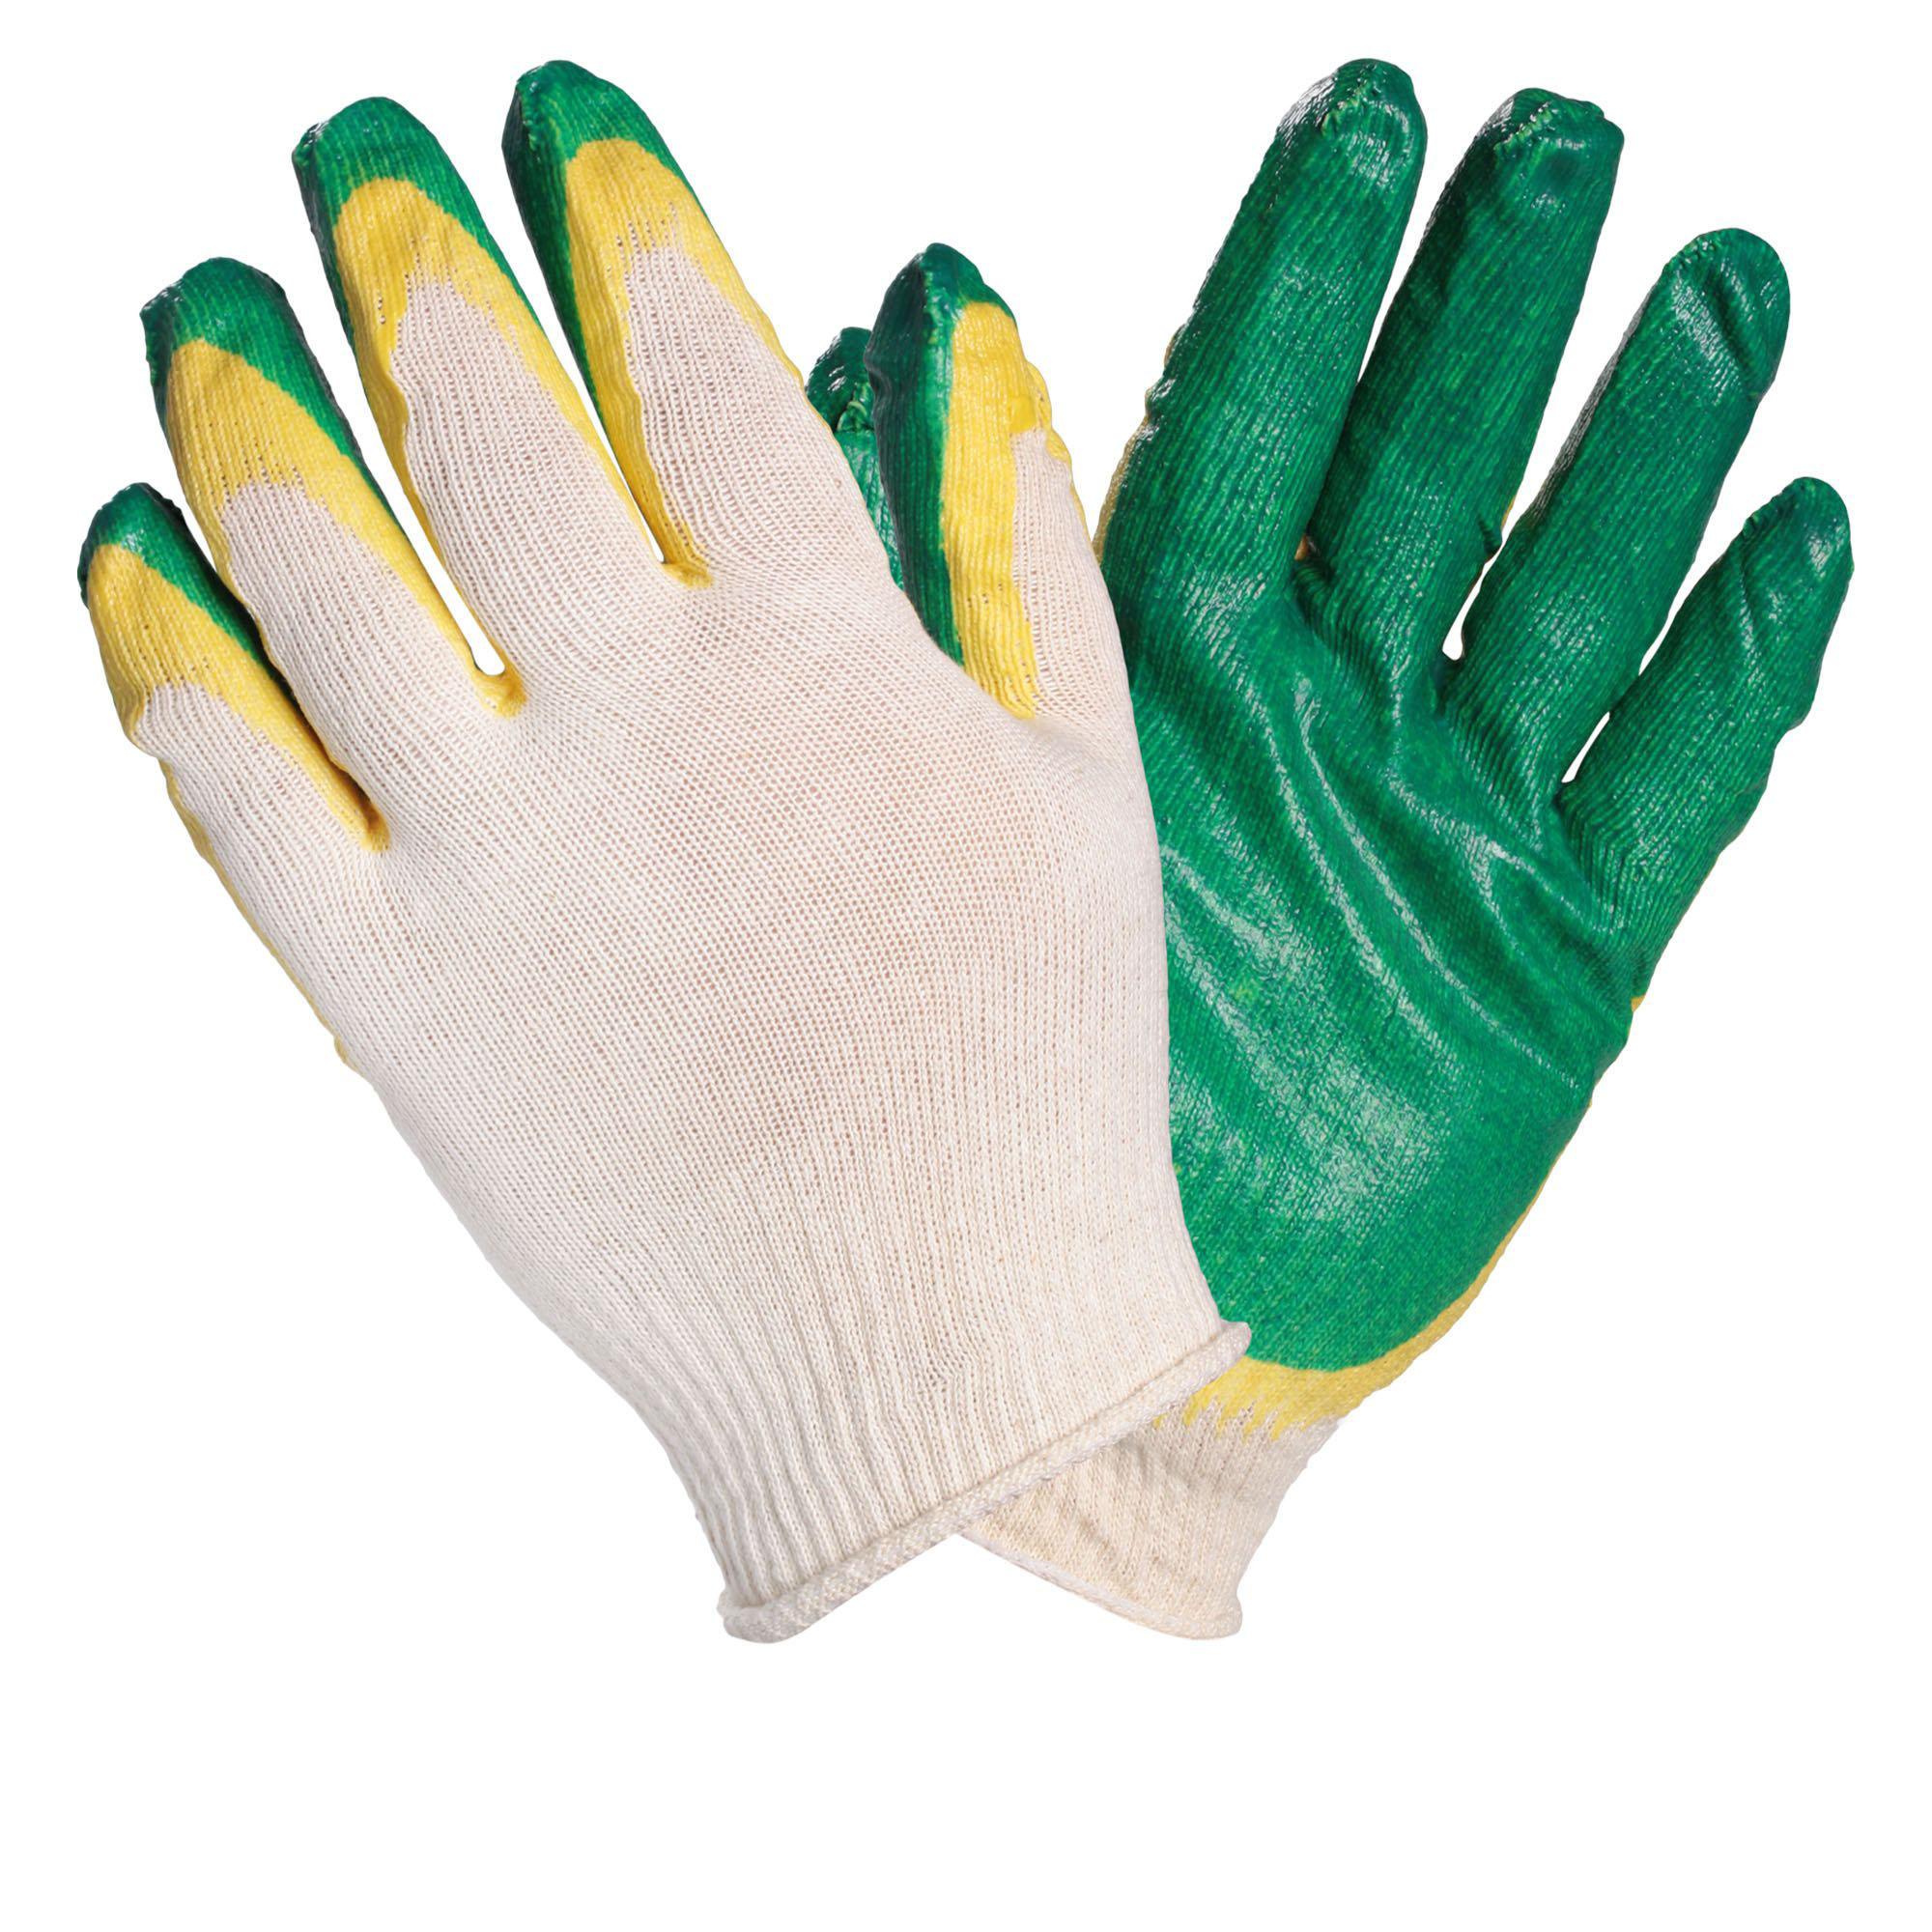 AIRLINE AWGC08 Перчатки ХБ с двойным латексным покрытием ладони, зеленые (1 пара) перчатки виниловые s т каgaku тонкие с антибактериальным эффектом зеленые 1 пара